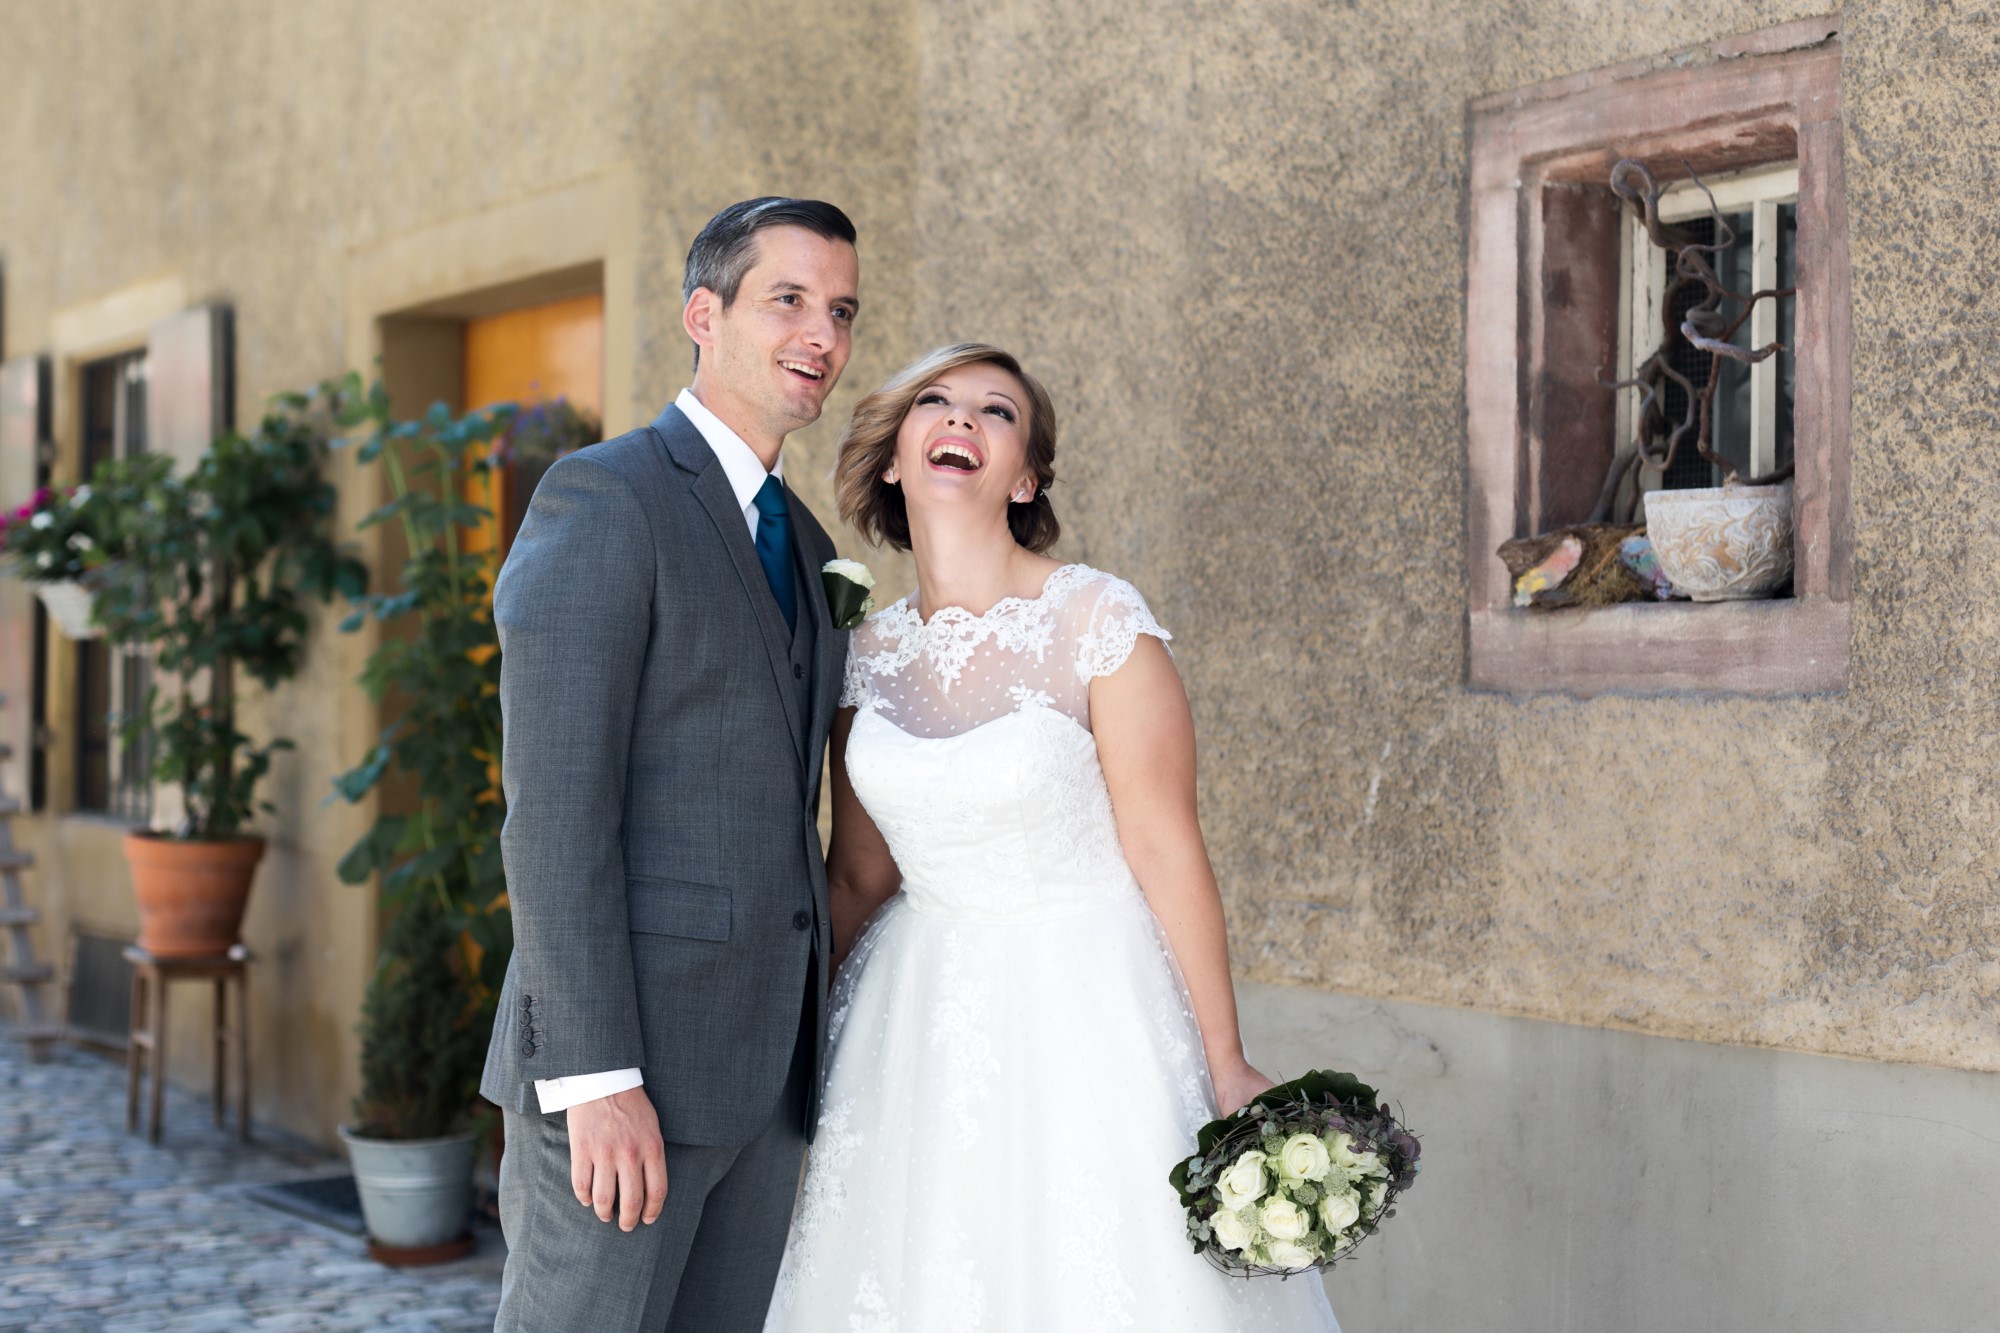 Das glückliche Brautpaar beim Brautpaar Fotoshooting in Rheinfelden. Die Braut lacht herzhaft.